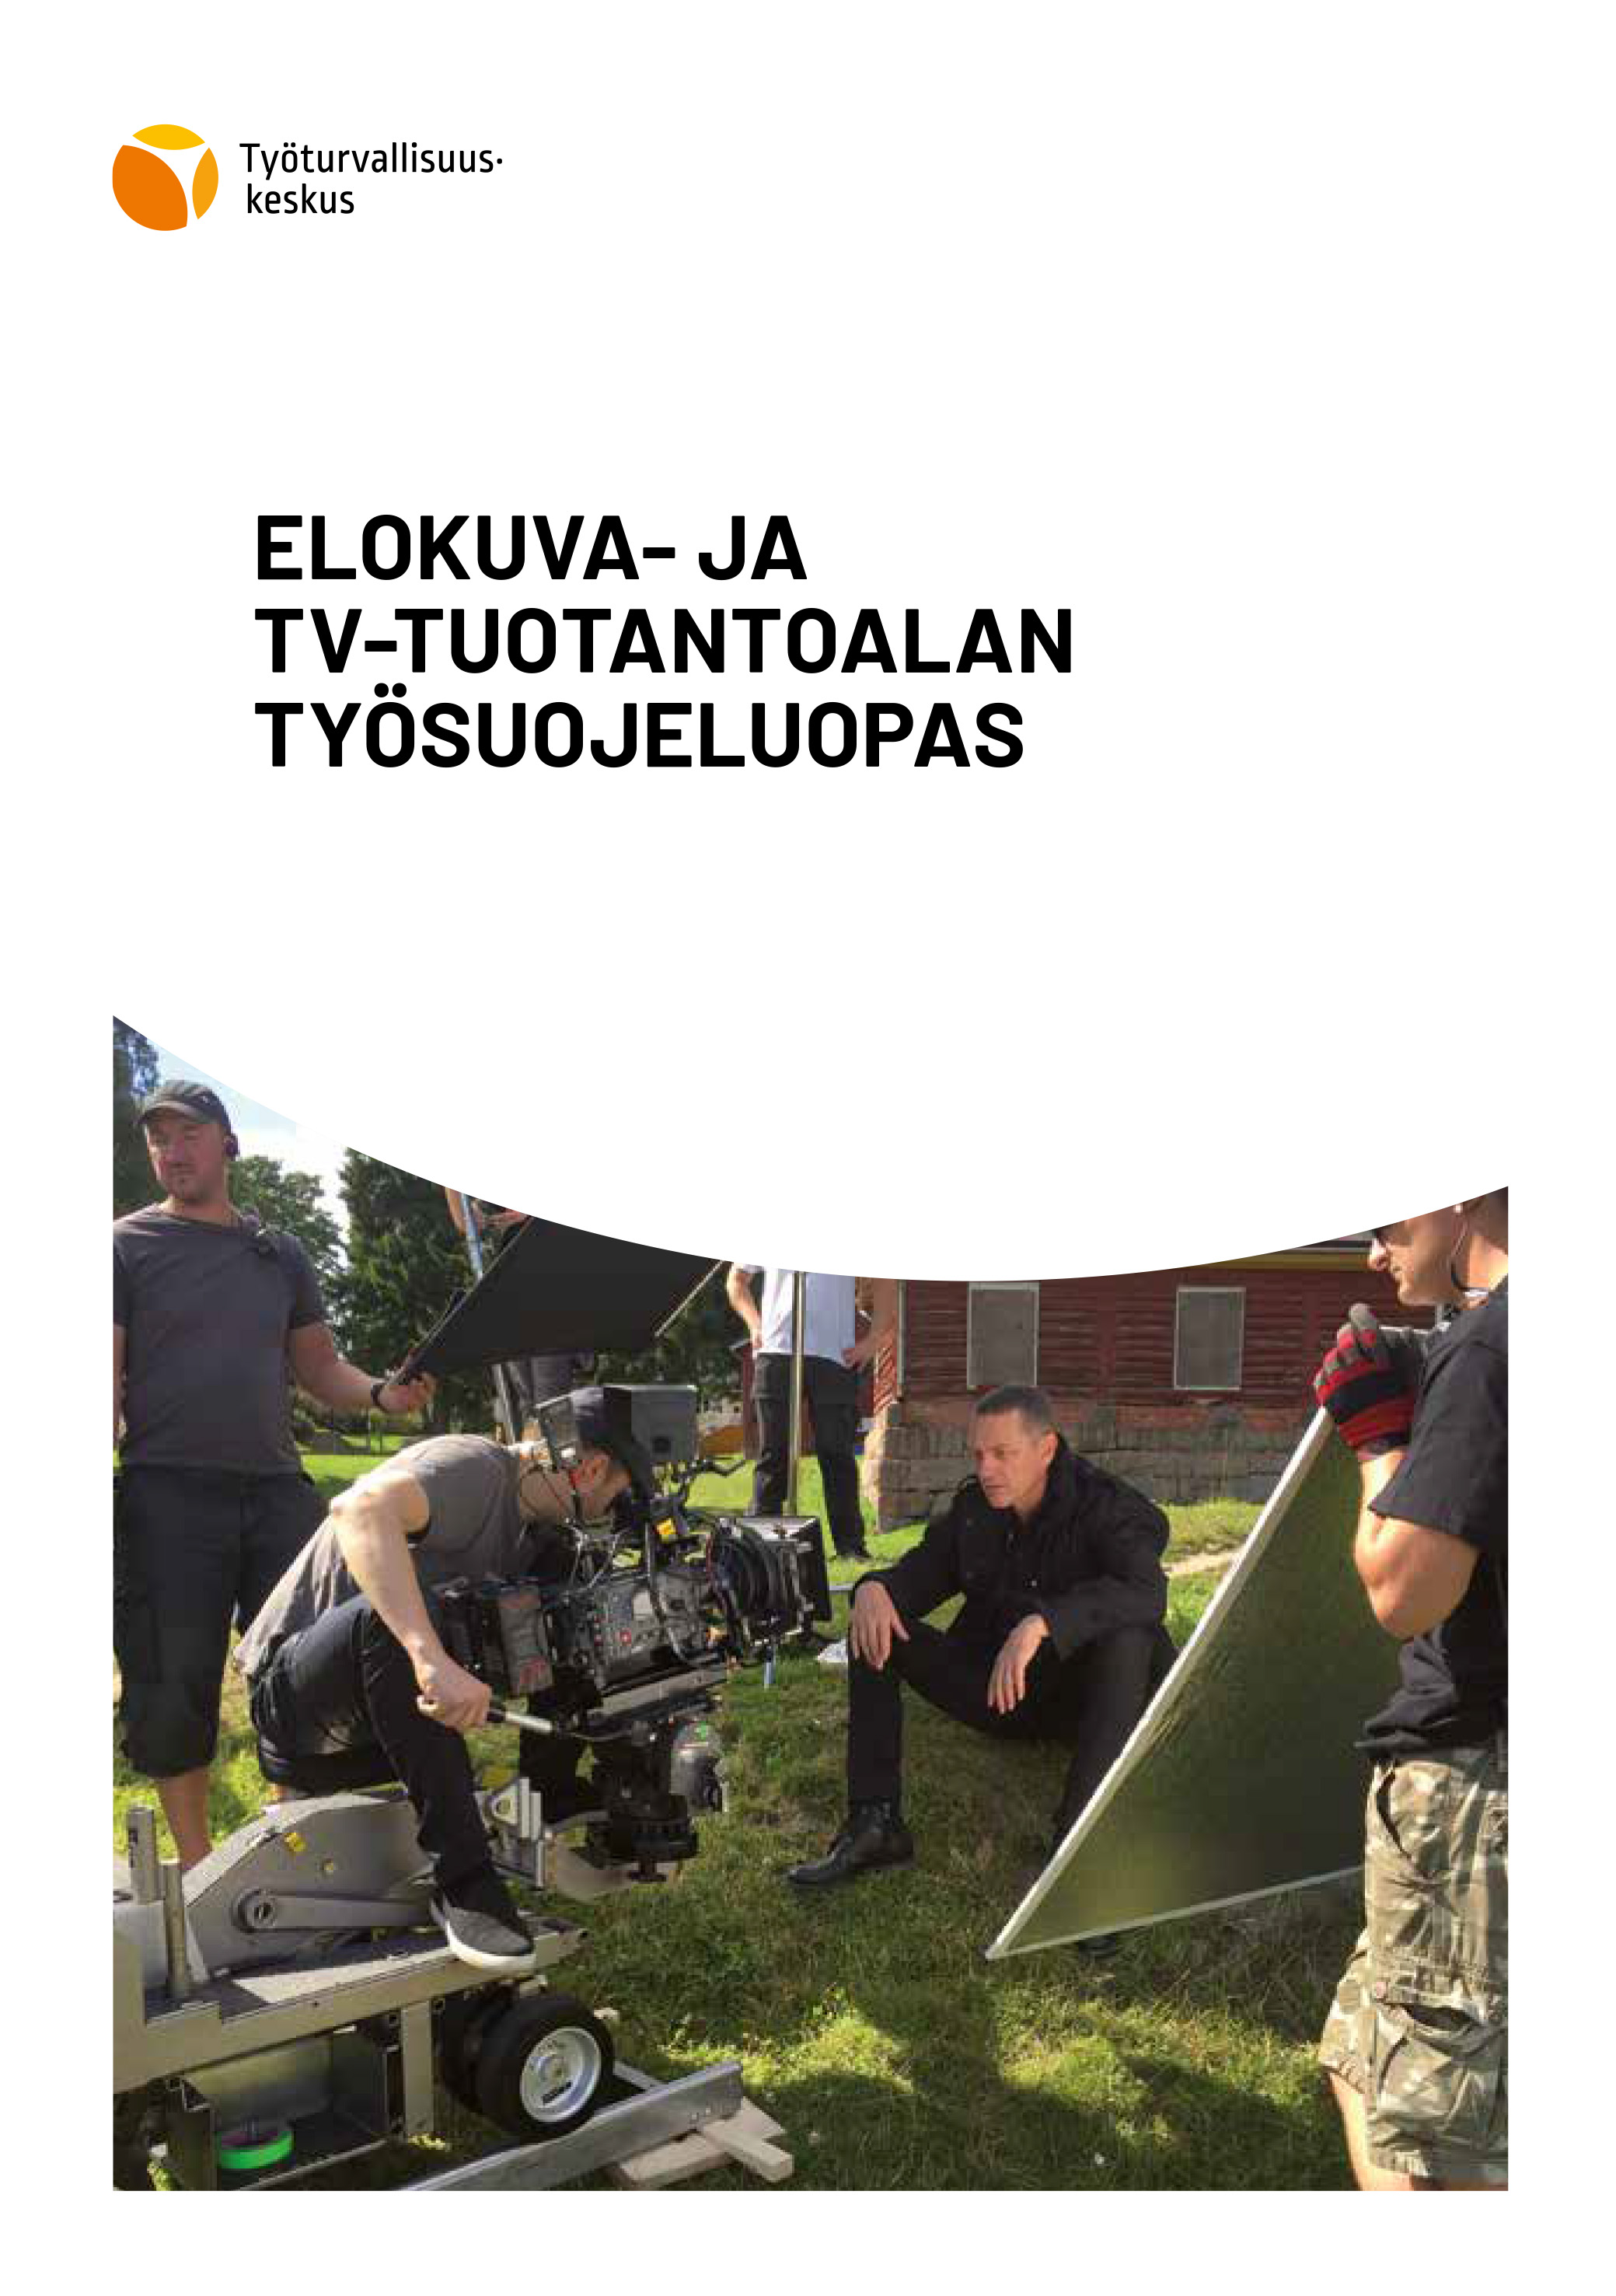 Elokuva- ja tv-tuotantoalan työsuojeluopas - Työturvallisuuskeskus